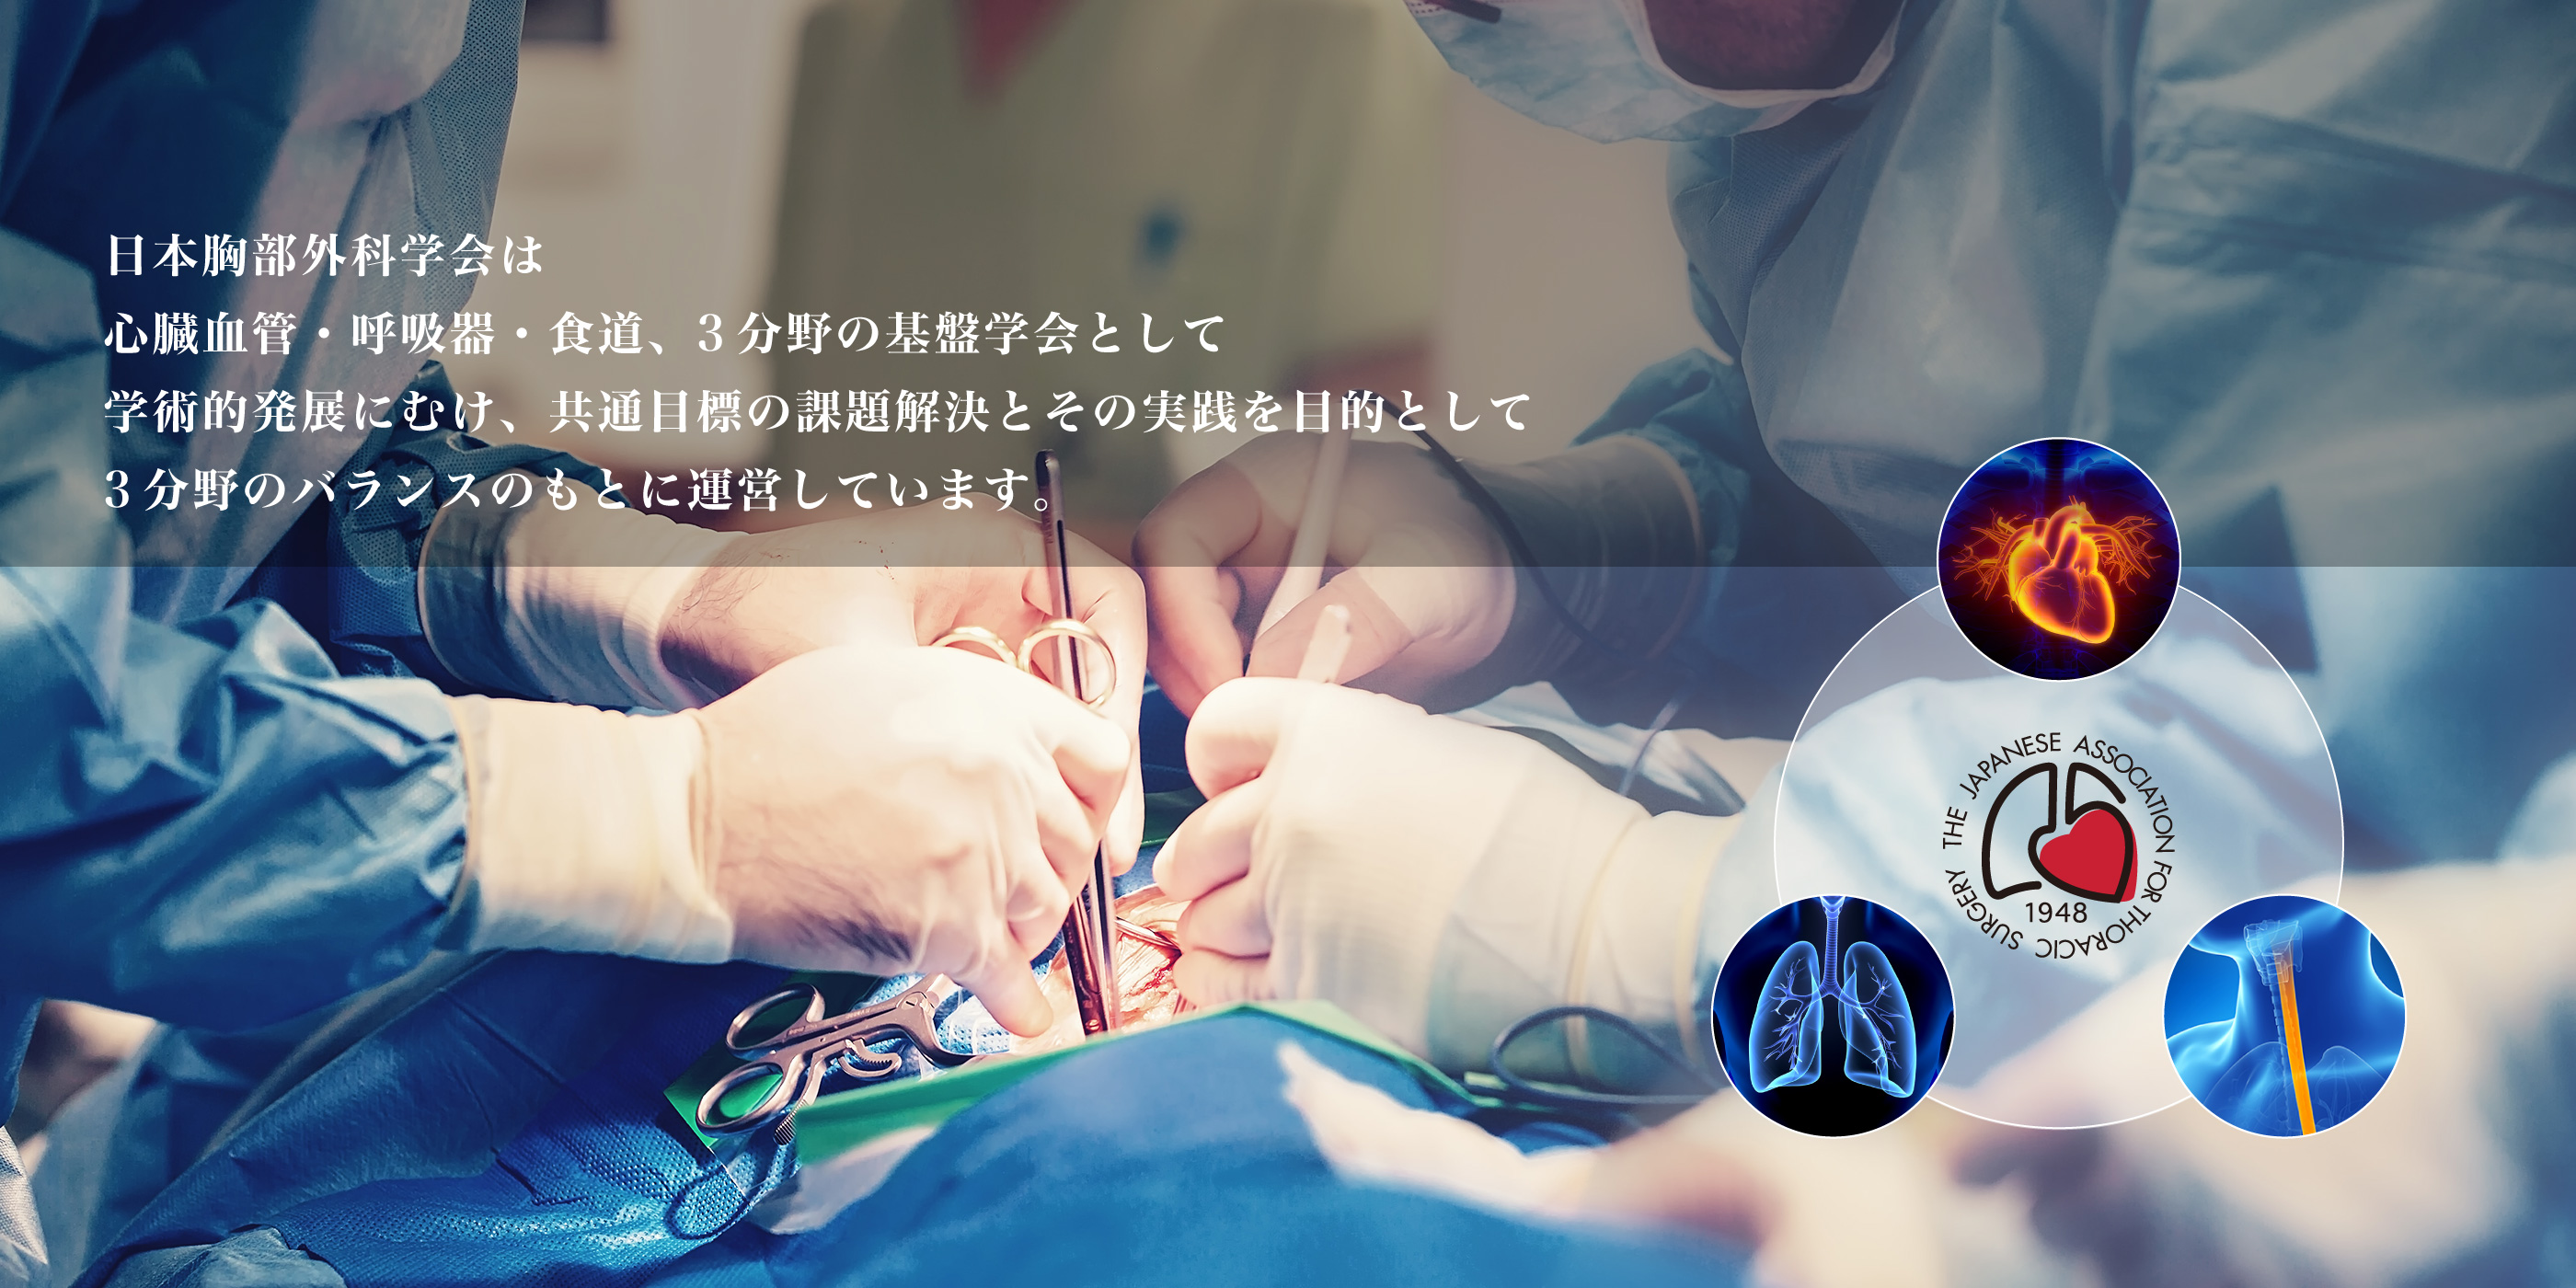 日本胸部外科学会